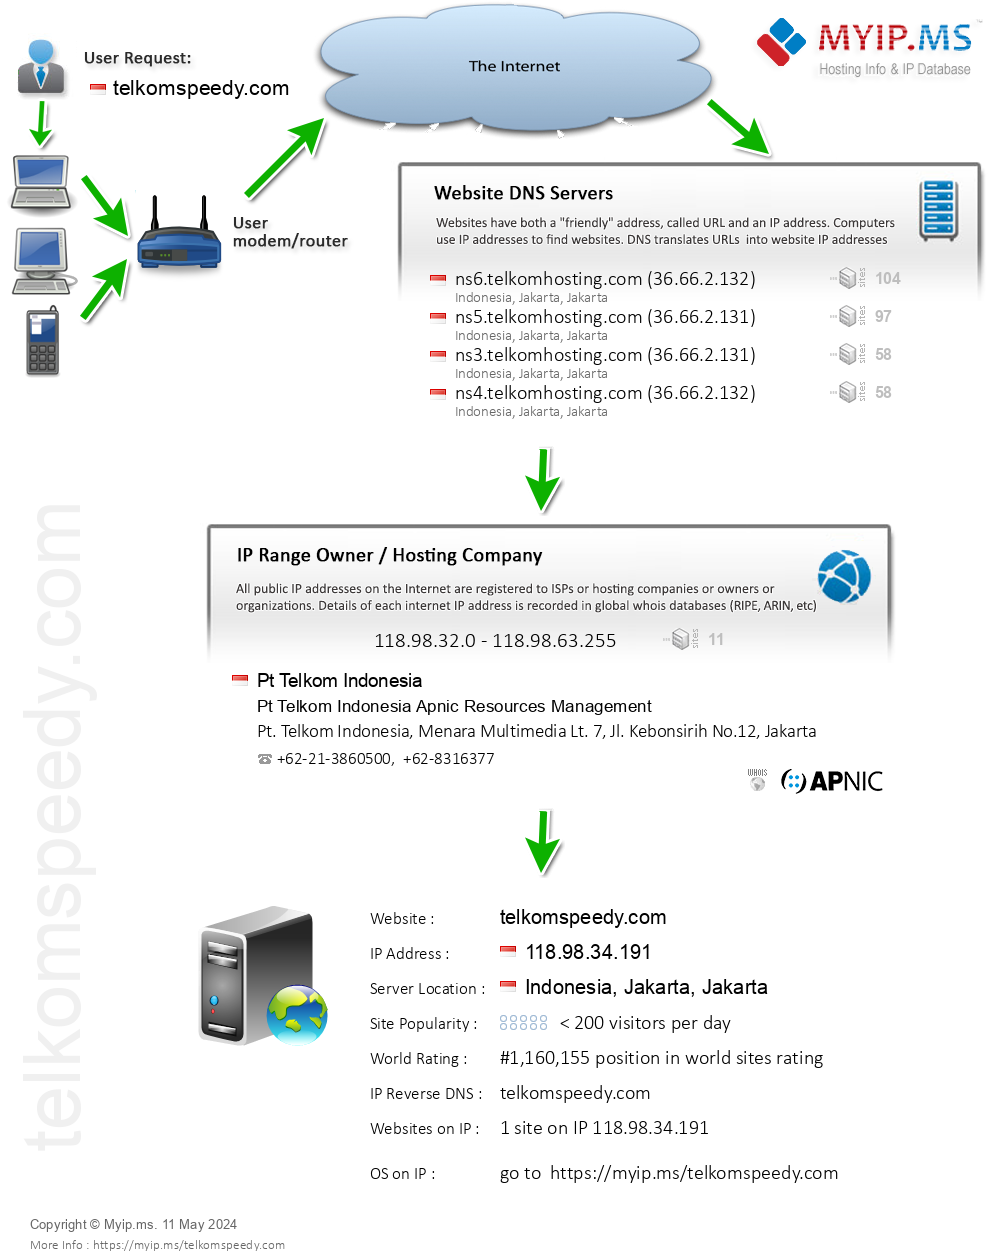 Telkomspeedy.com - Website Hosting Visual IP Diagram